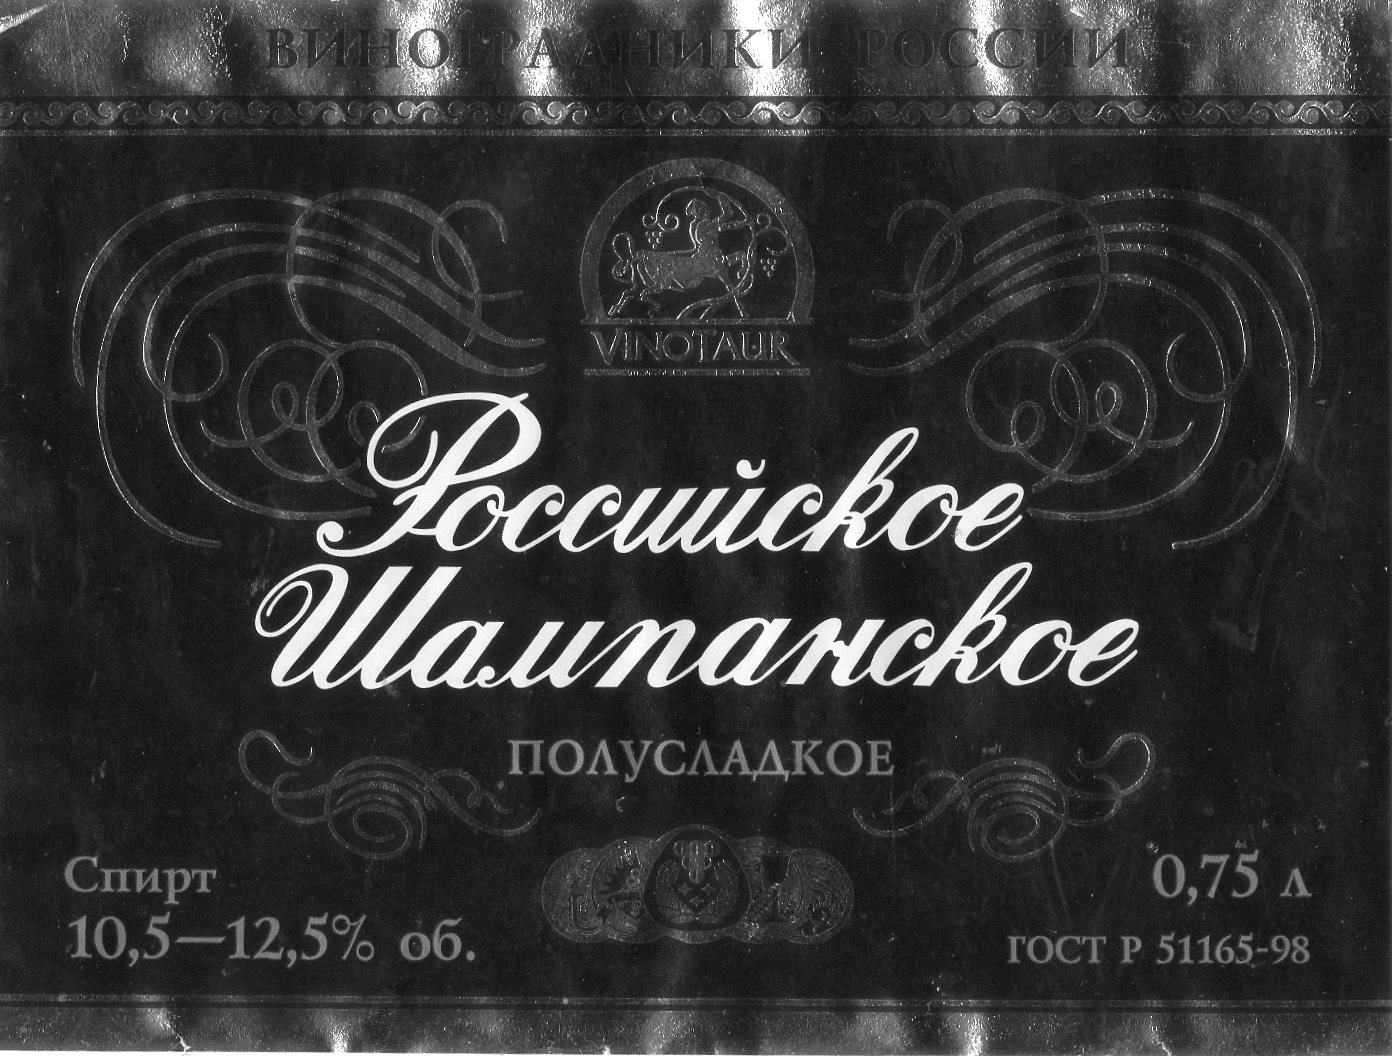 Российское шампанское 1945 года.